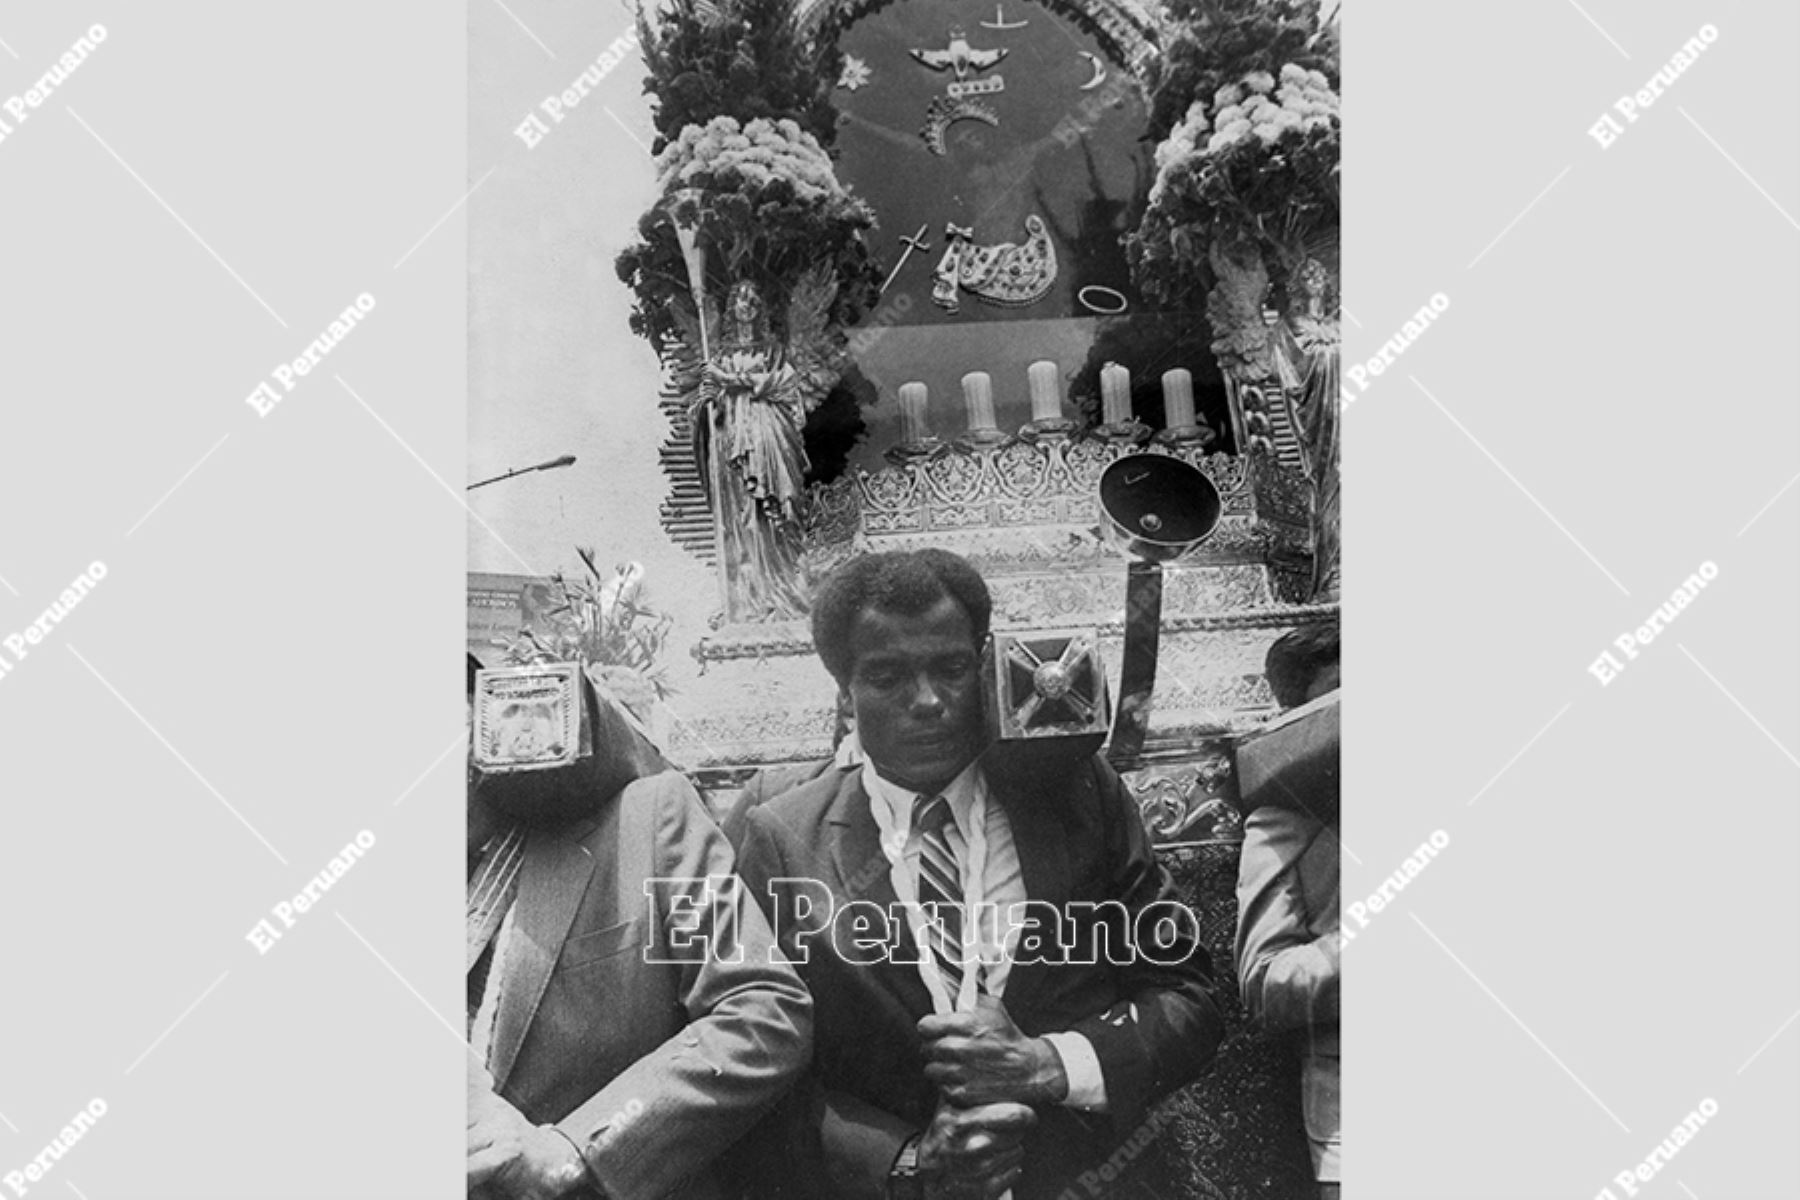 Lima - 19 octubre 1988 / Teófilo Cubillas carga las andas del Señor de los Milagros en el homenaje que le rindió el club Alianza Lima al Cristo Moreno. 
Foto: Archivo Histórico de El Peruano